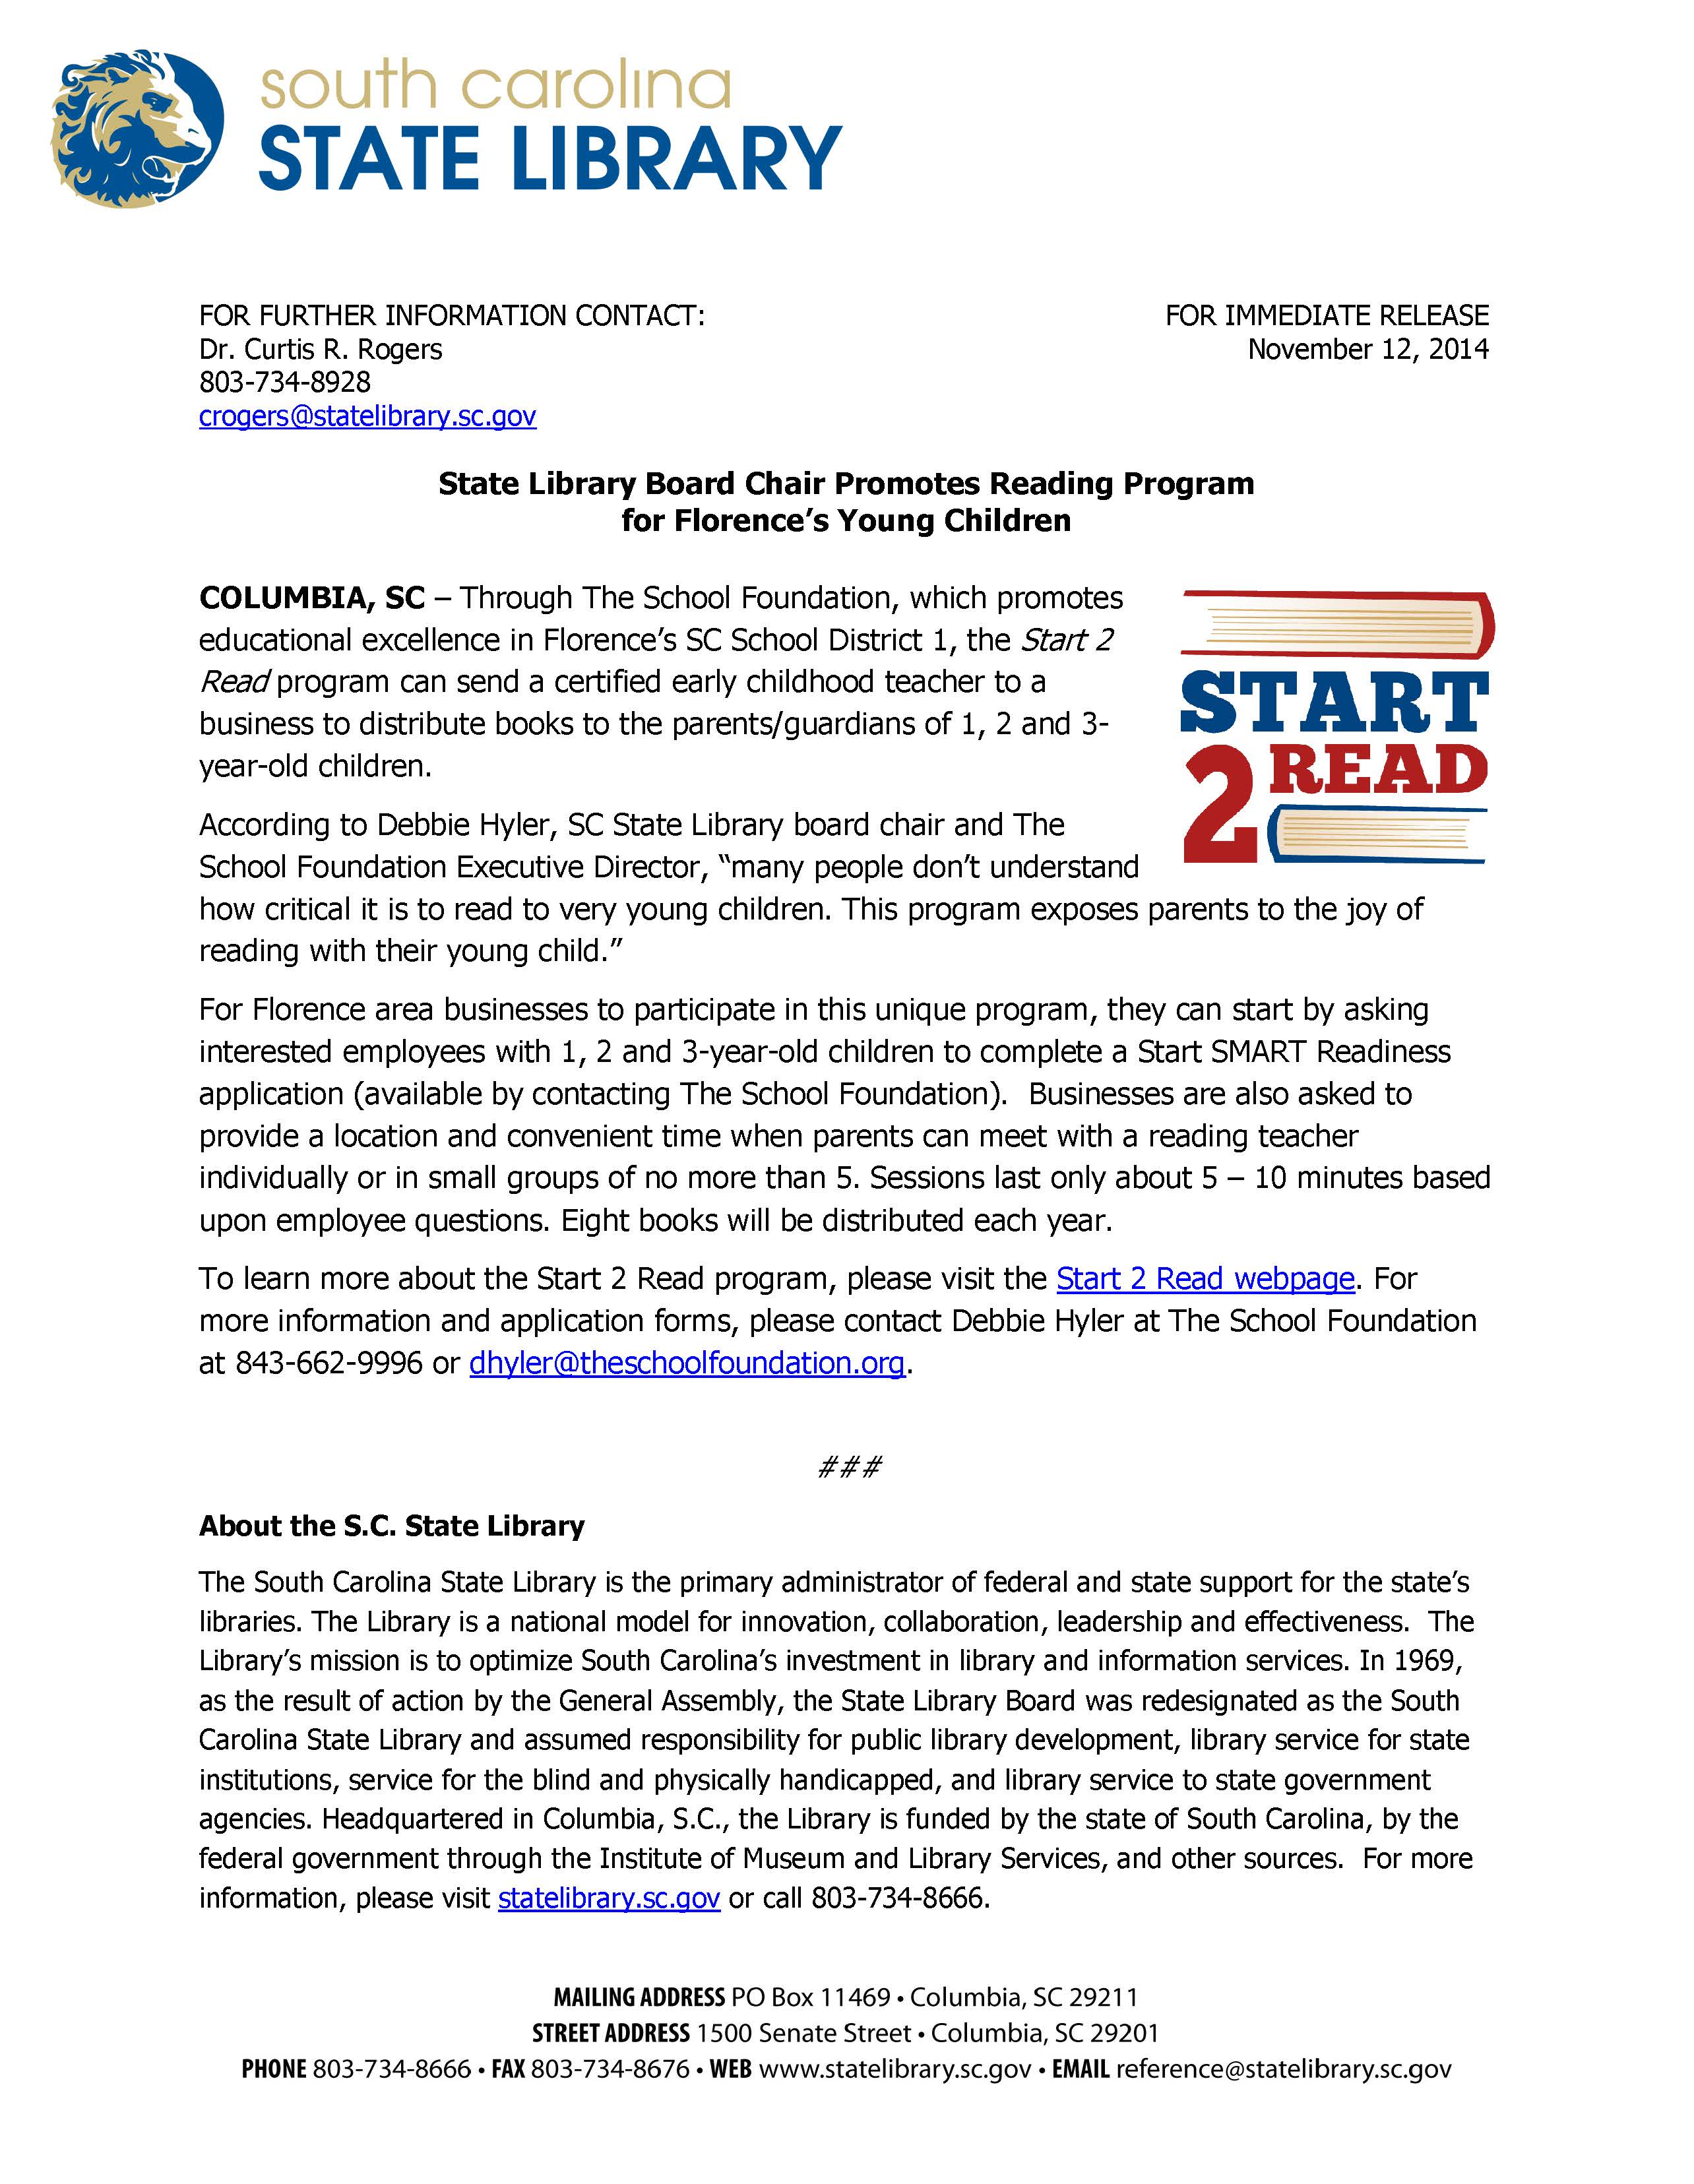 Start 2 Read Program Press Release